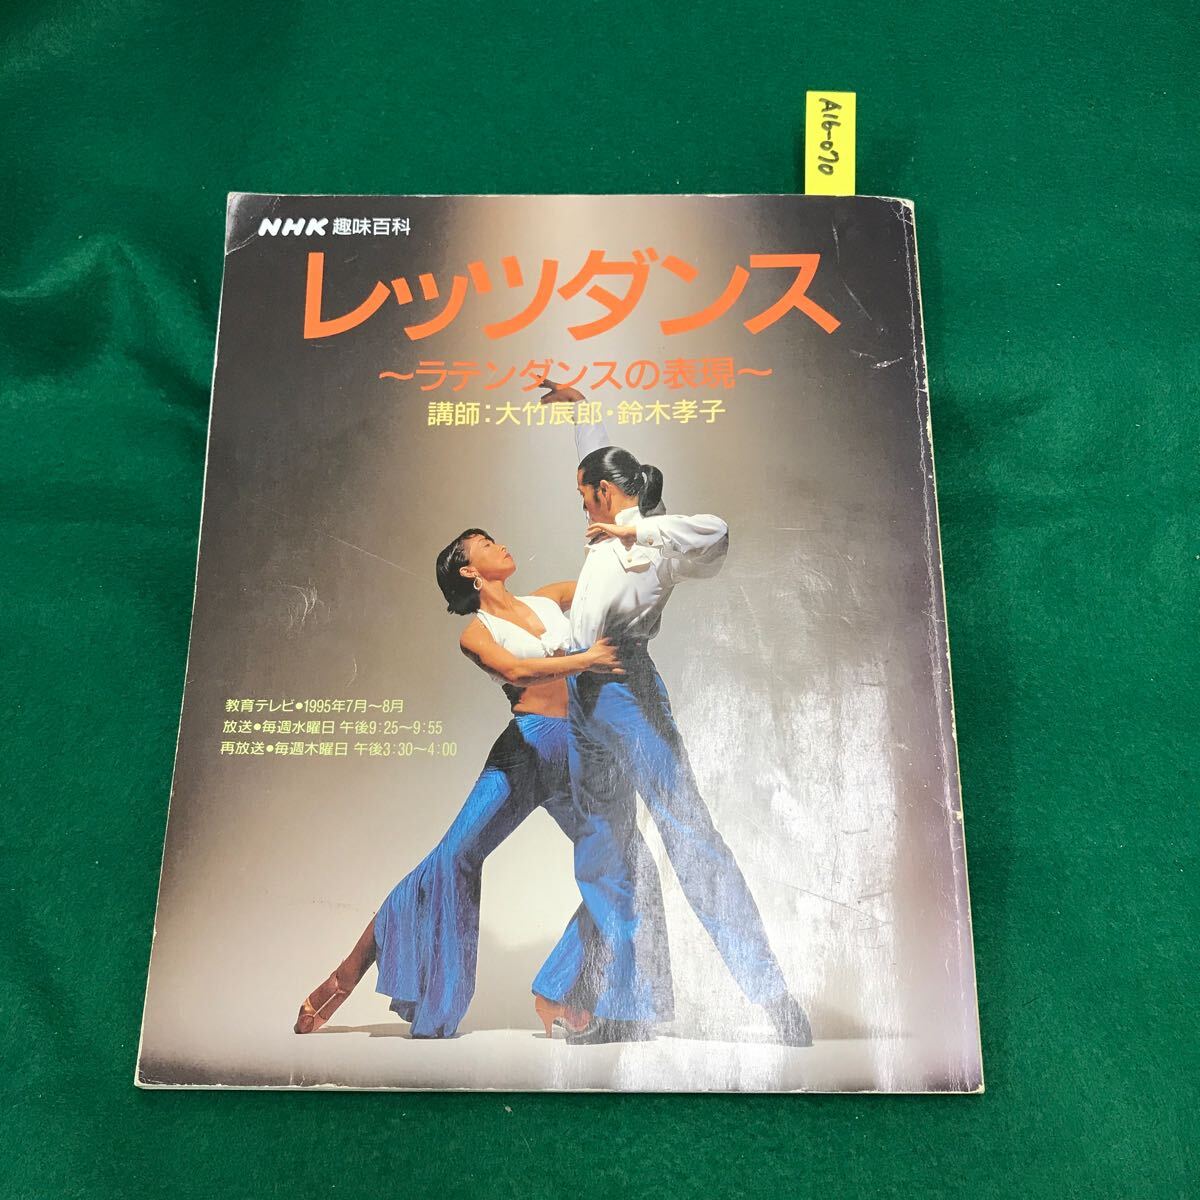 A16-070 NHK хобби различные предметы let's Dance латиноамериканский Dance. таблица на данный момент эпоха Heisei 7 год 7 месяц ~8 месяц 